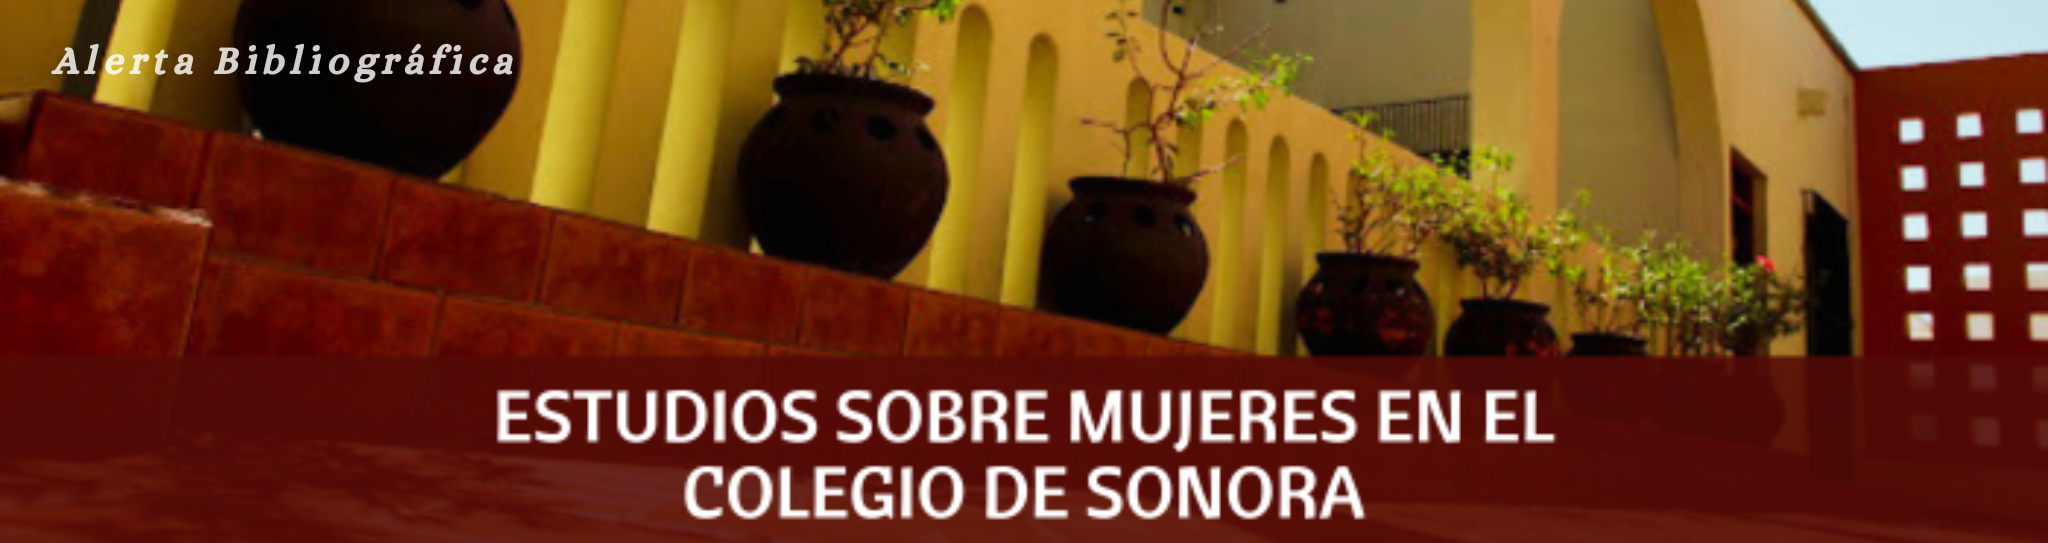 Alerta bibliográfica: Estudios sobre mujeres en El Colegio de Sonora